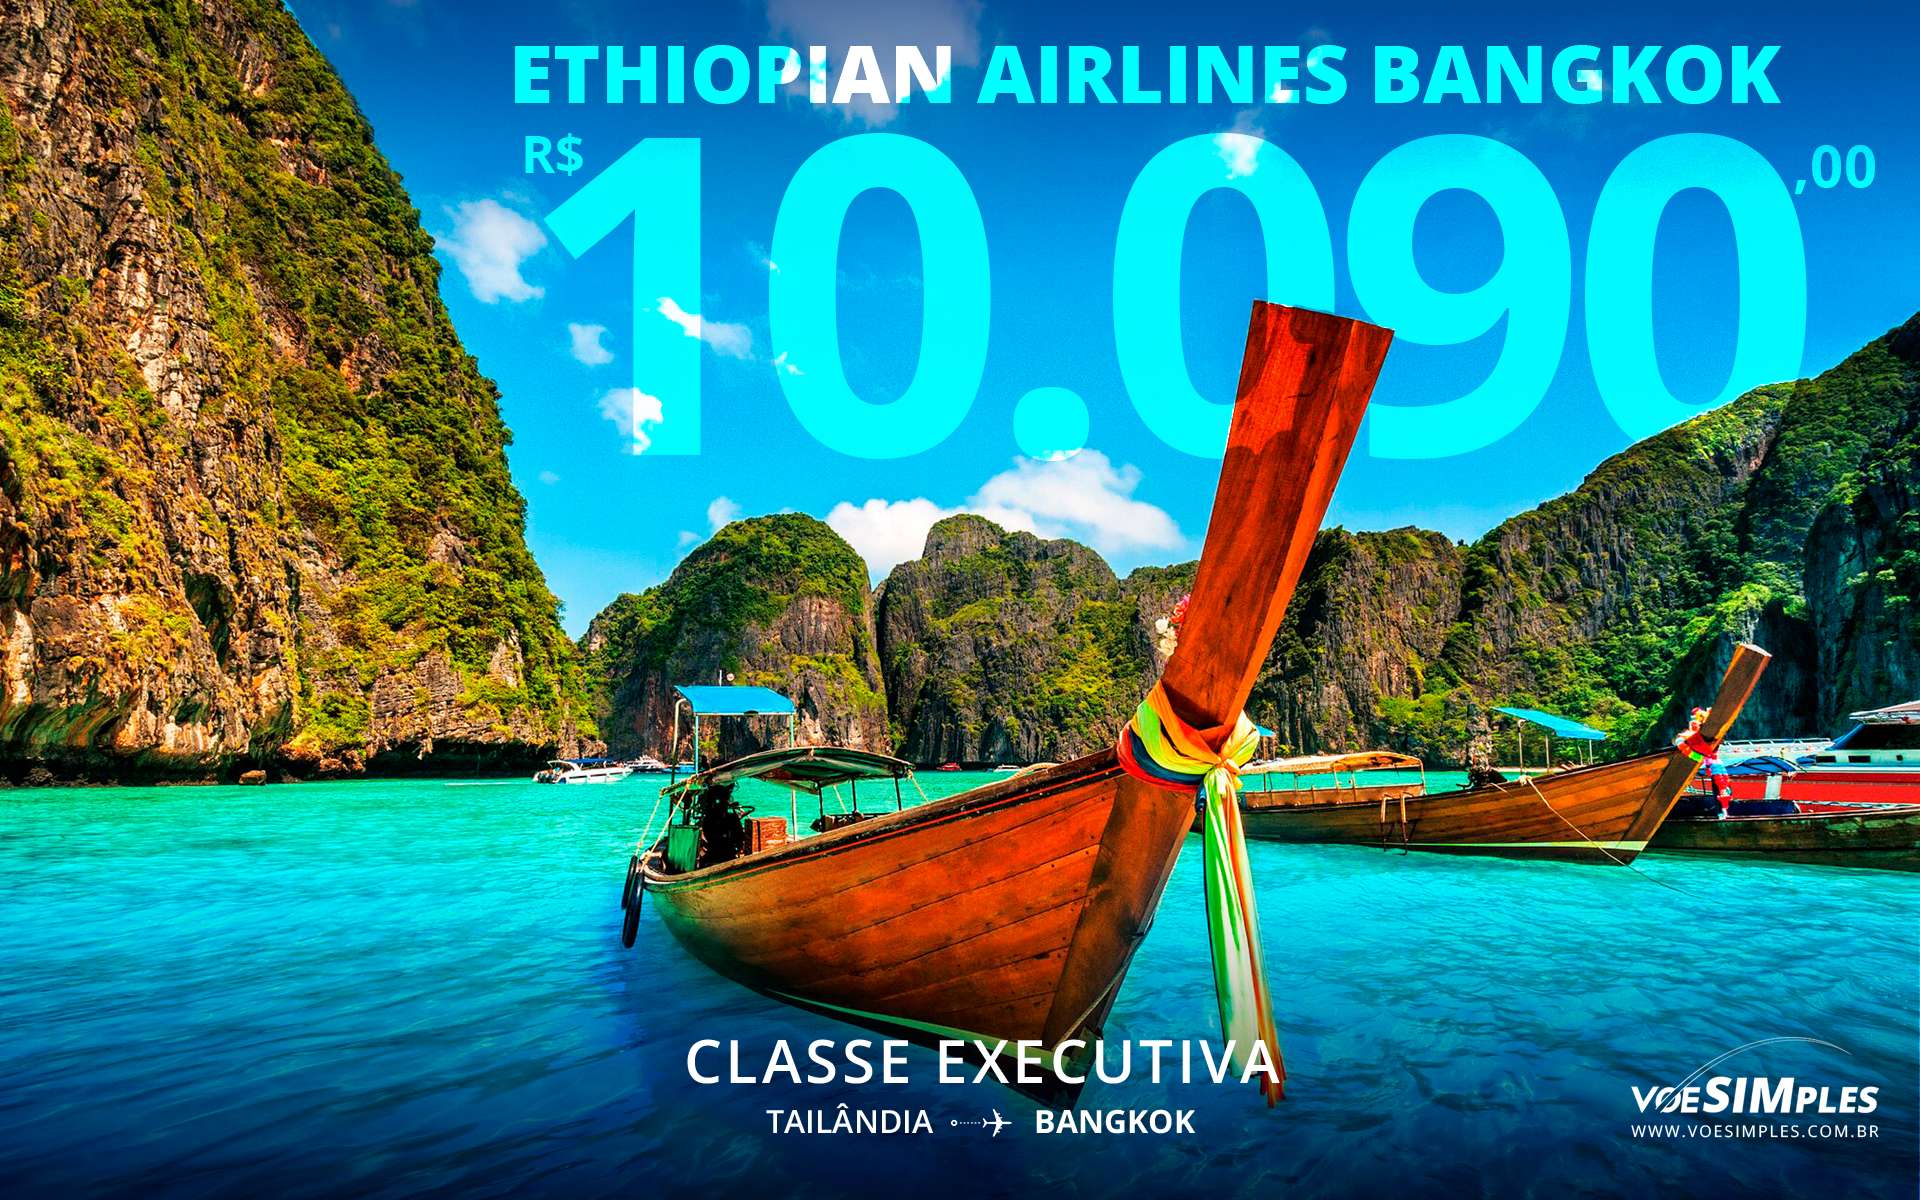 Passagem aérea classe executiva Ethiopian